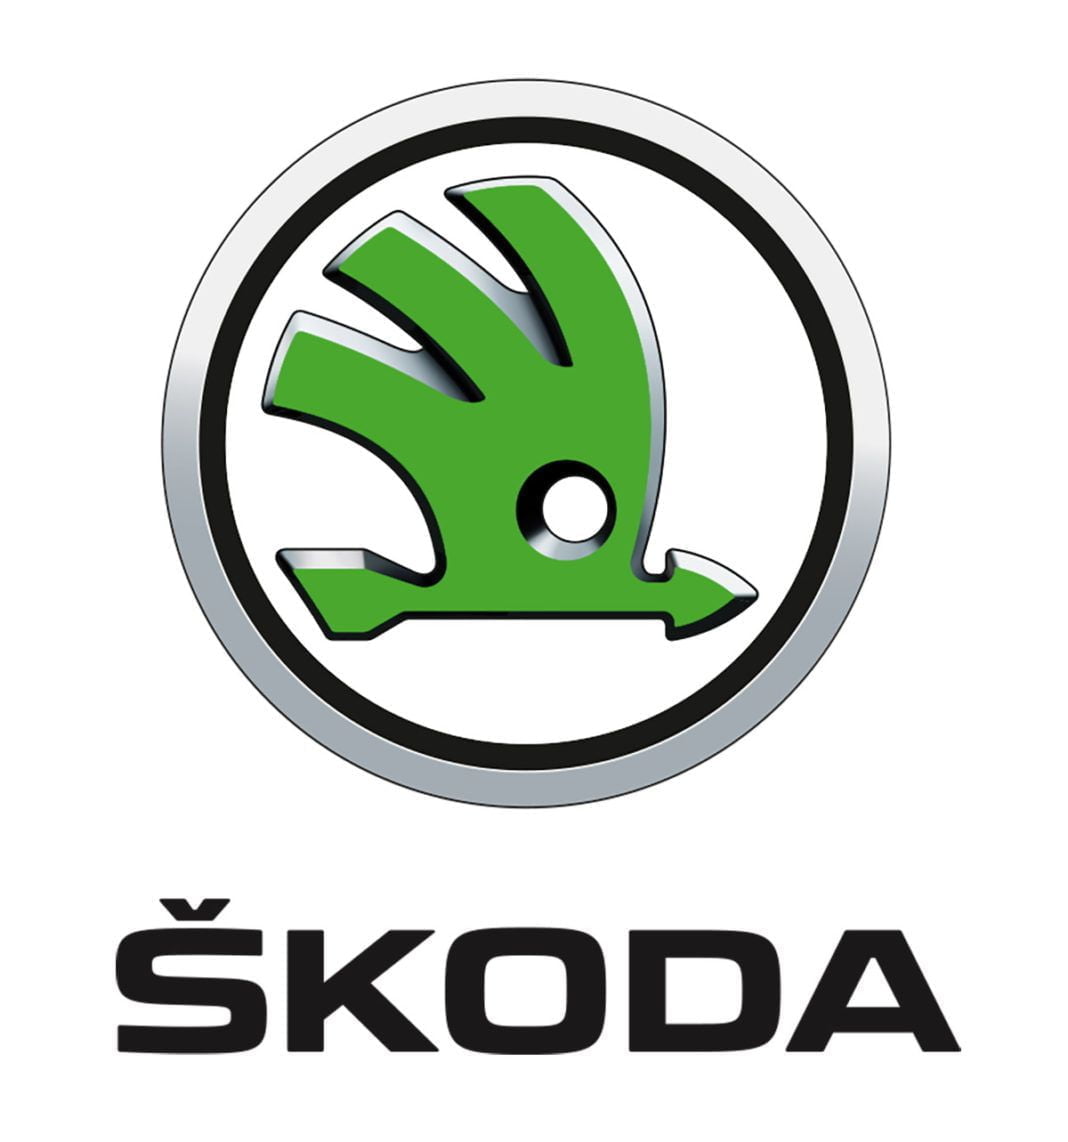 skoda logo | Car logos, Skoda, Logo color schemes